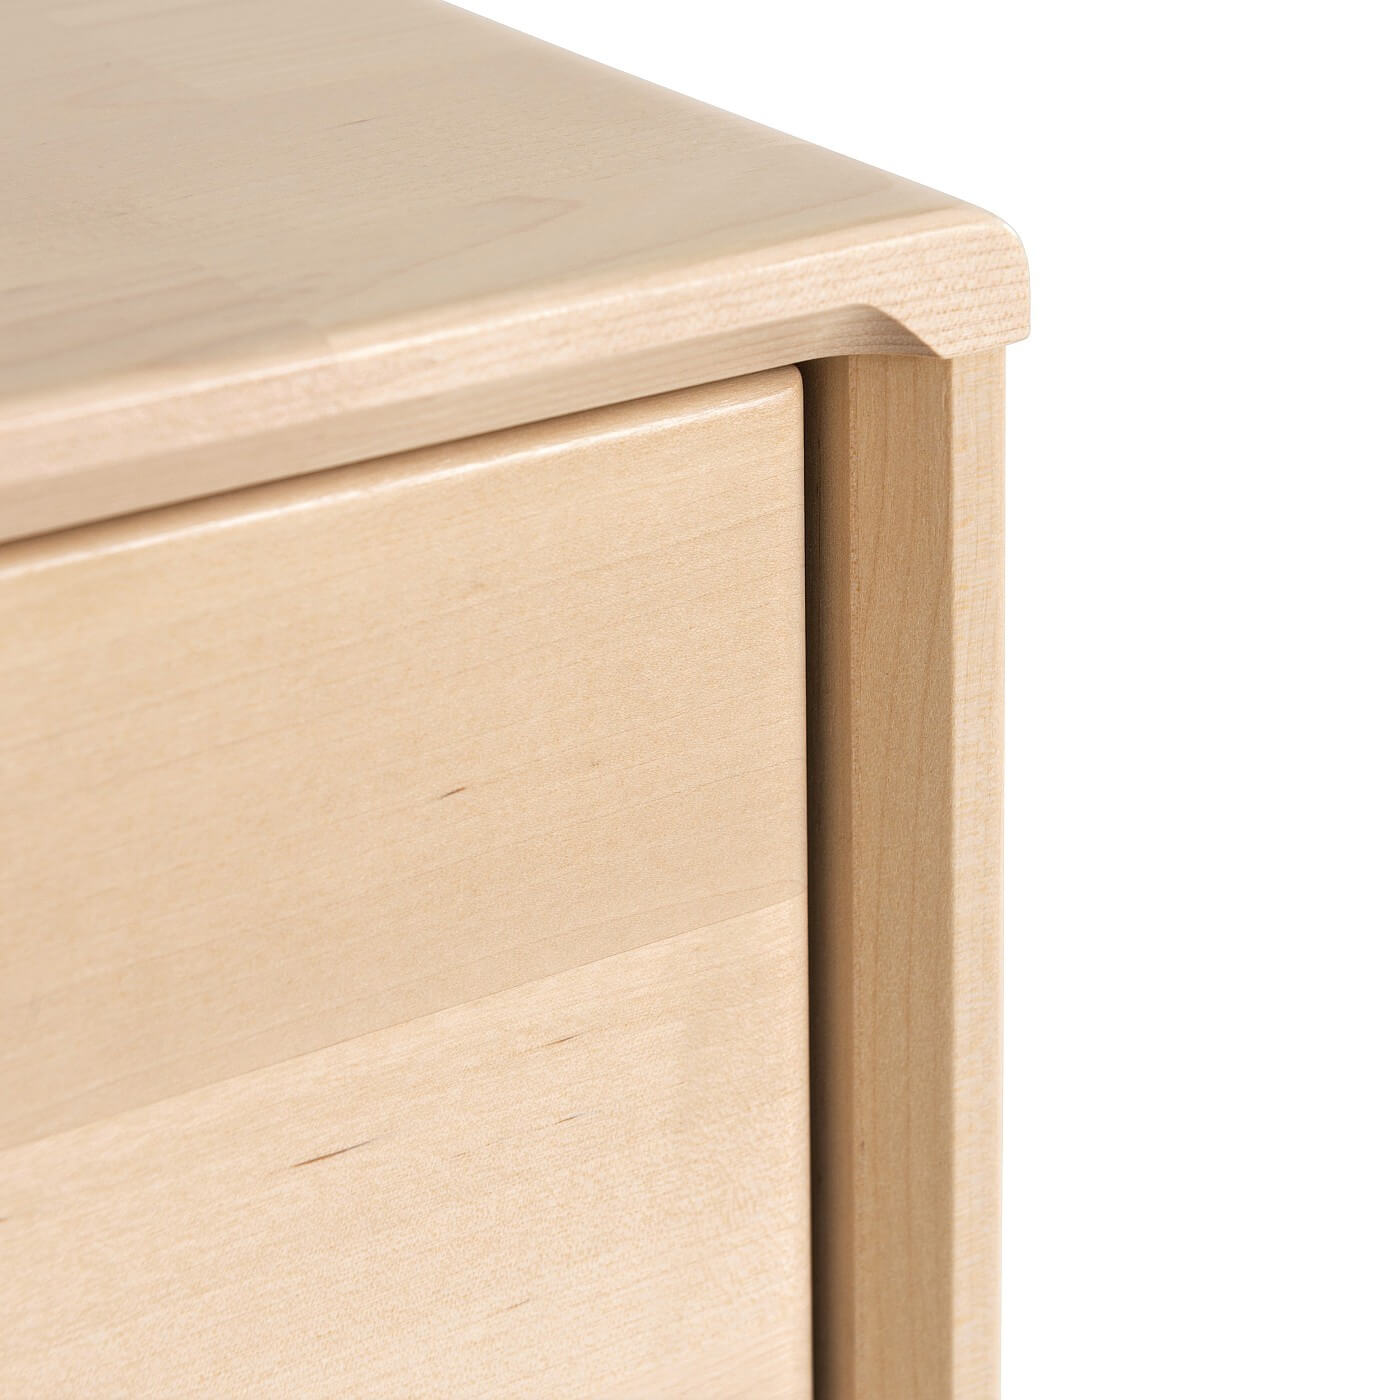 Wąska komoda z szufladami NOTTE 30 cm. Róg nowoczesnego skandynawskiego drewnianego mebla ręcznie robionego